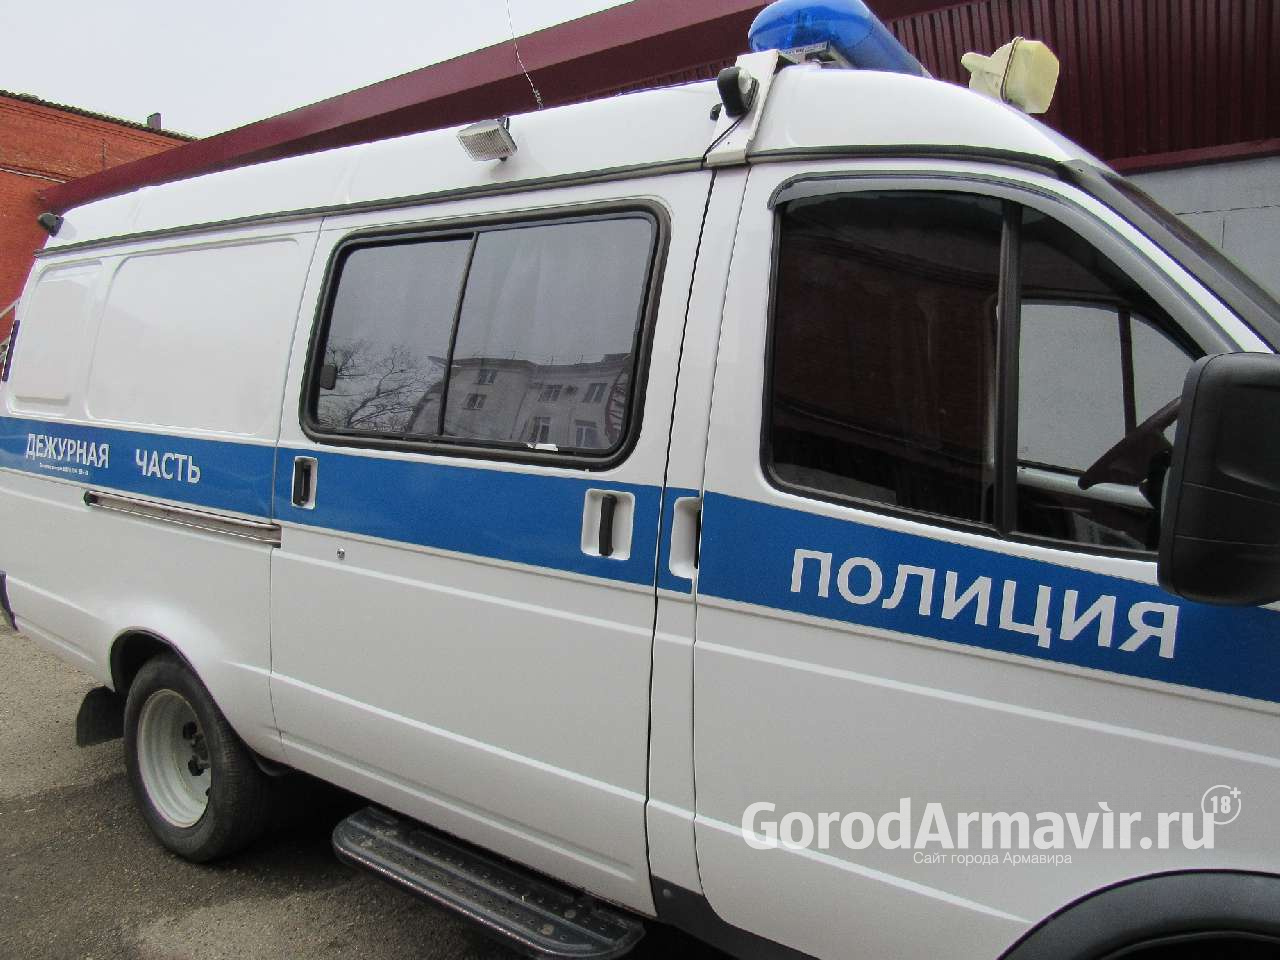 В Армавире с начала года мошенники смогли дистанционно похитить у граждан почти 300 тыс руб